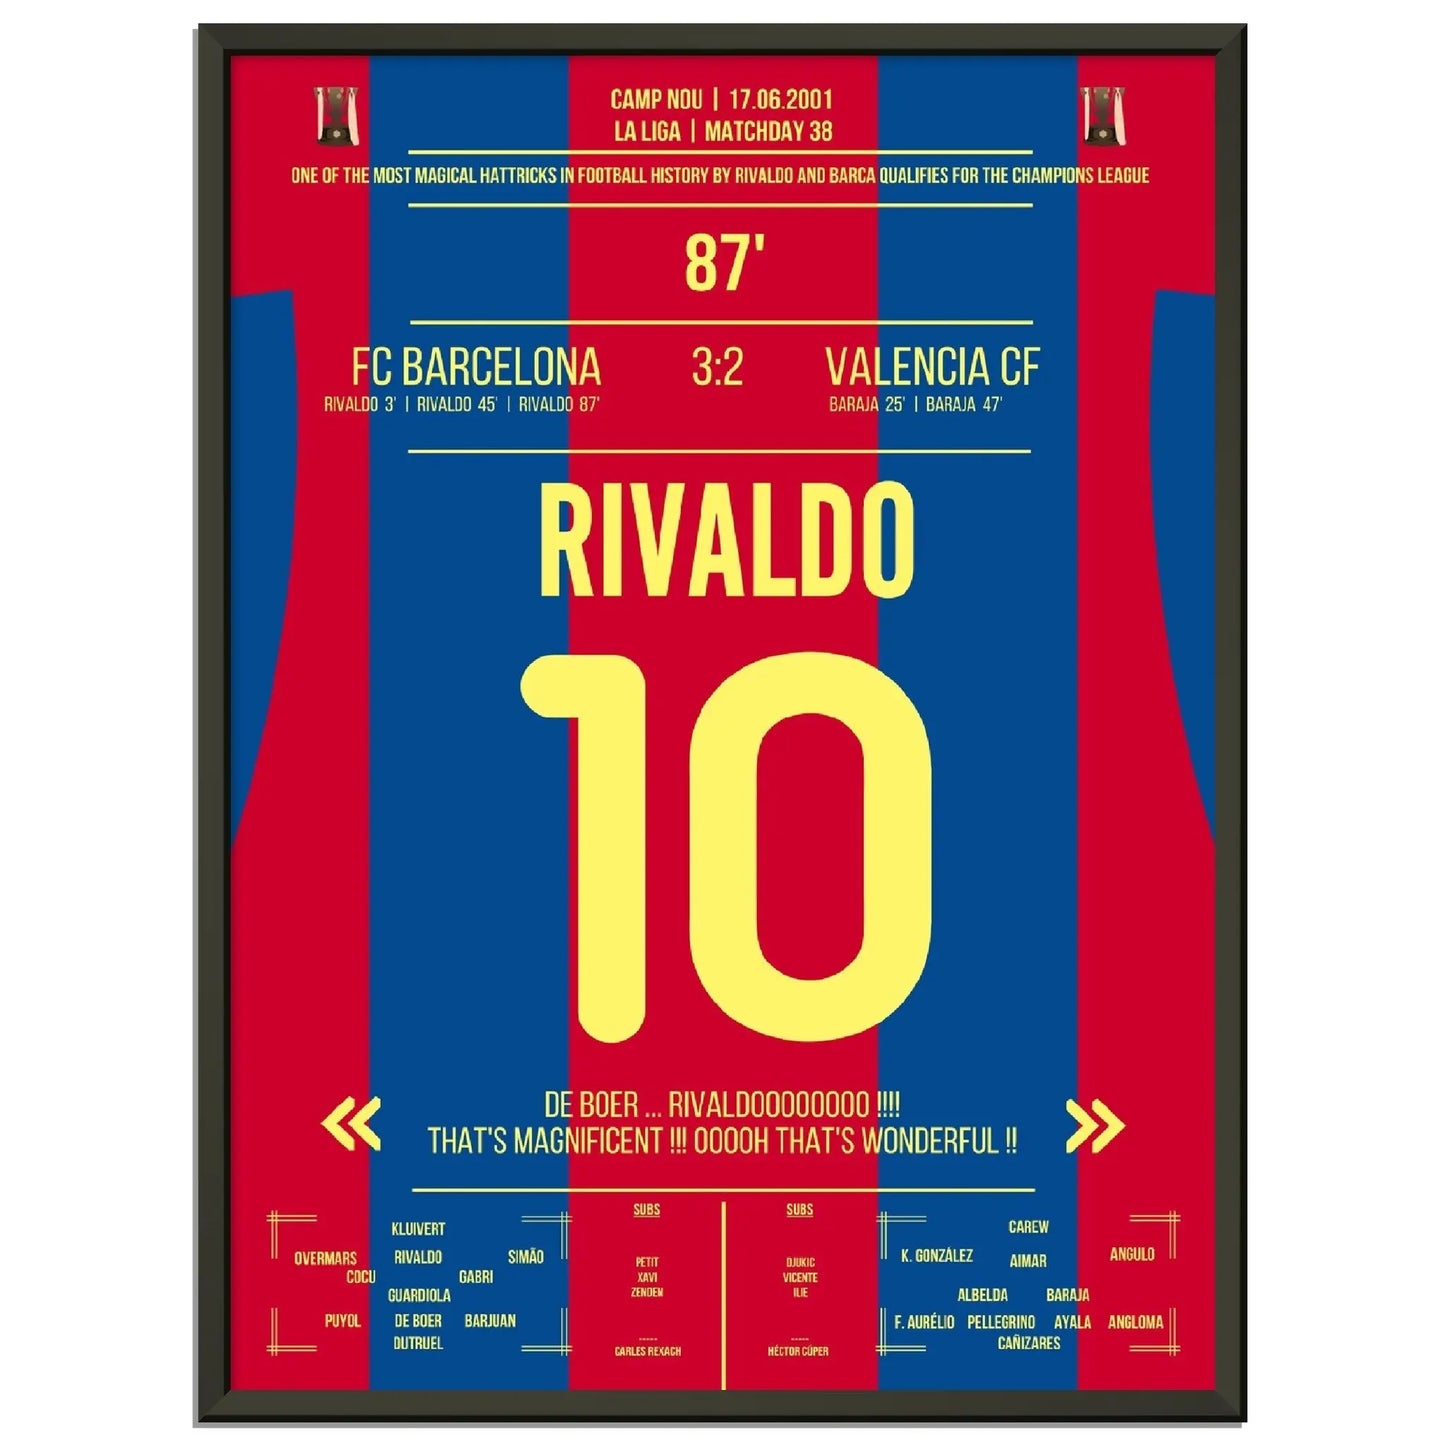 Rivaldo's magischer hattrick führt Barcelona in die Champions League 